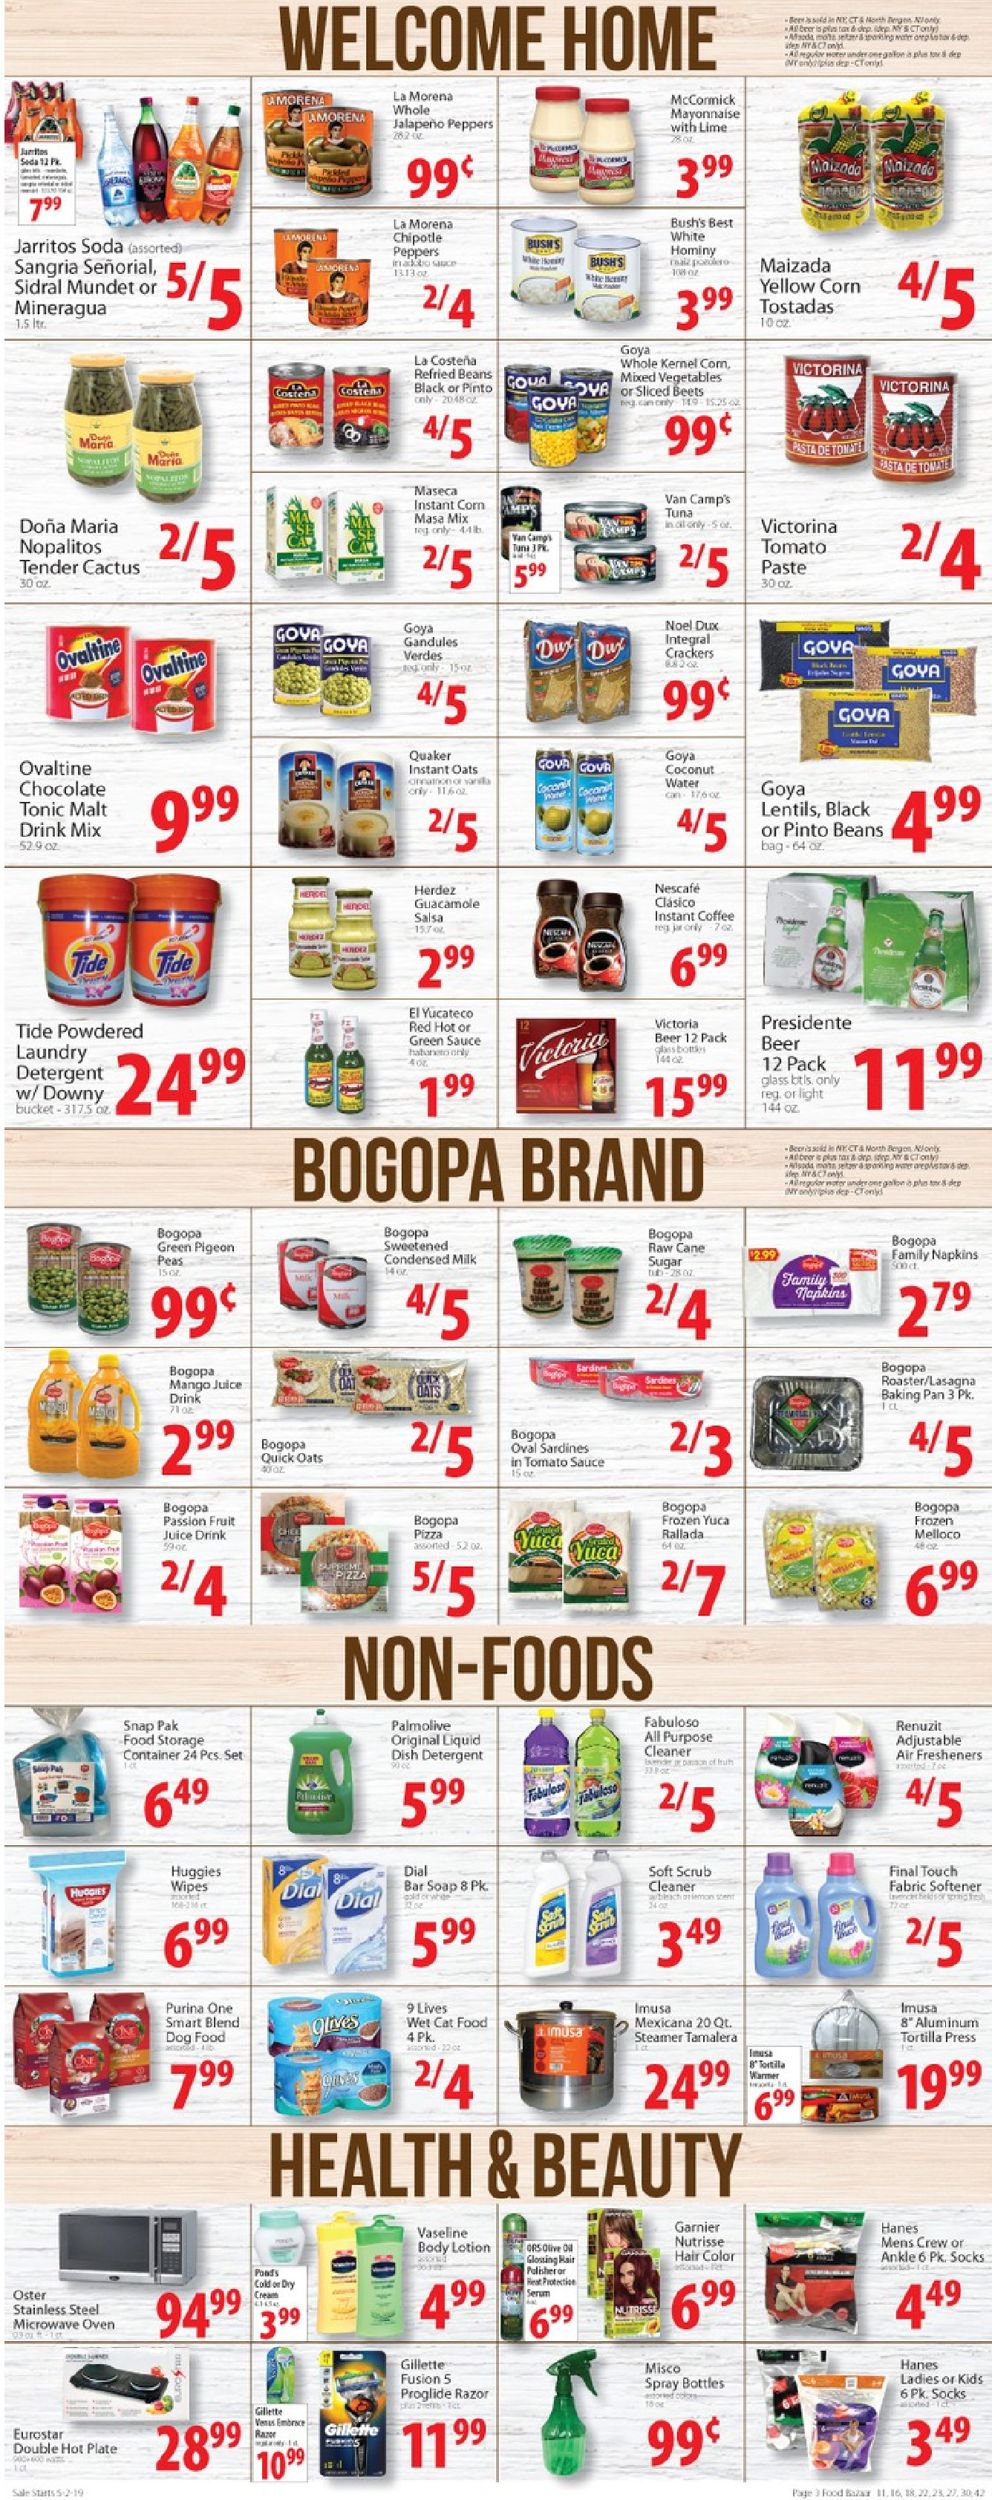 Food Bazaar Weekly Ad Circular - valid 05/02-05/08/2019 (Page 3)